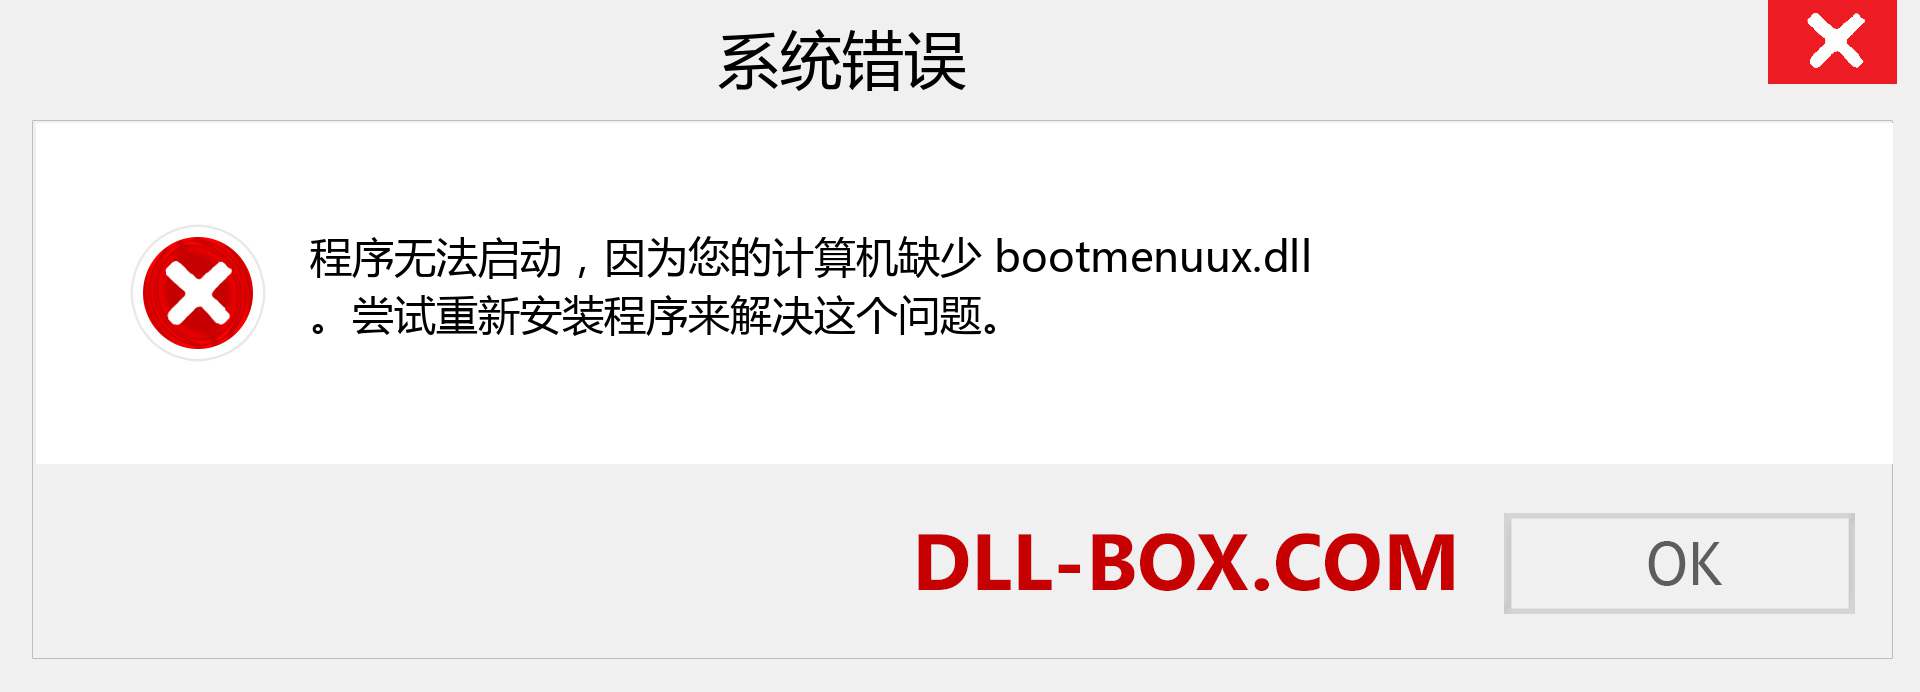 bootmenuux.dll 文件丢失？。 适用于 Windows 7、8、10 的下载 - 修复 Windows、照片、图像上的 bootmenuux dll 丢失错误